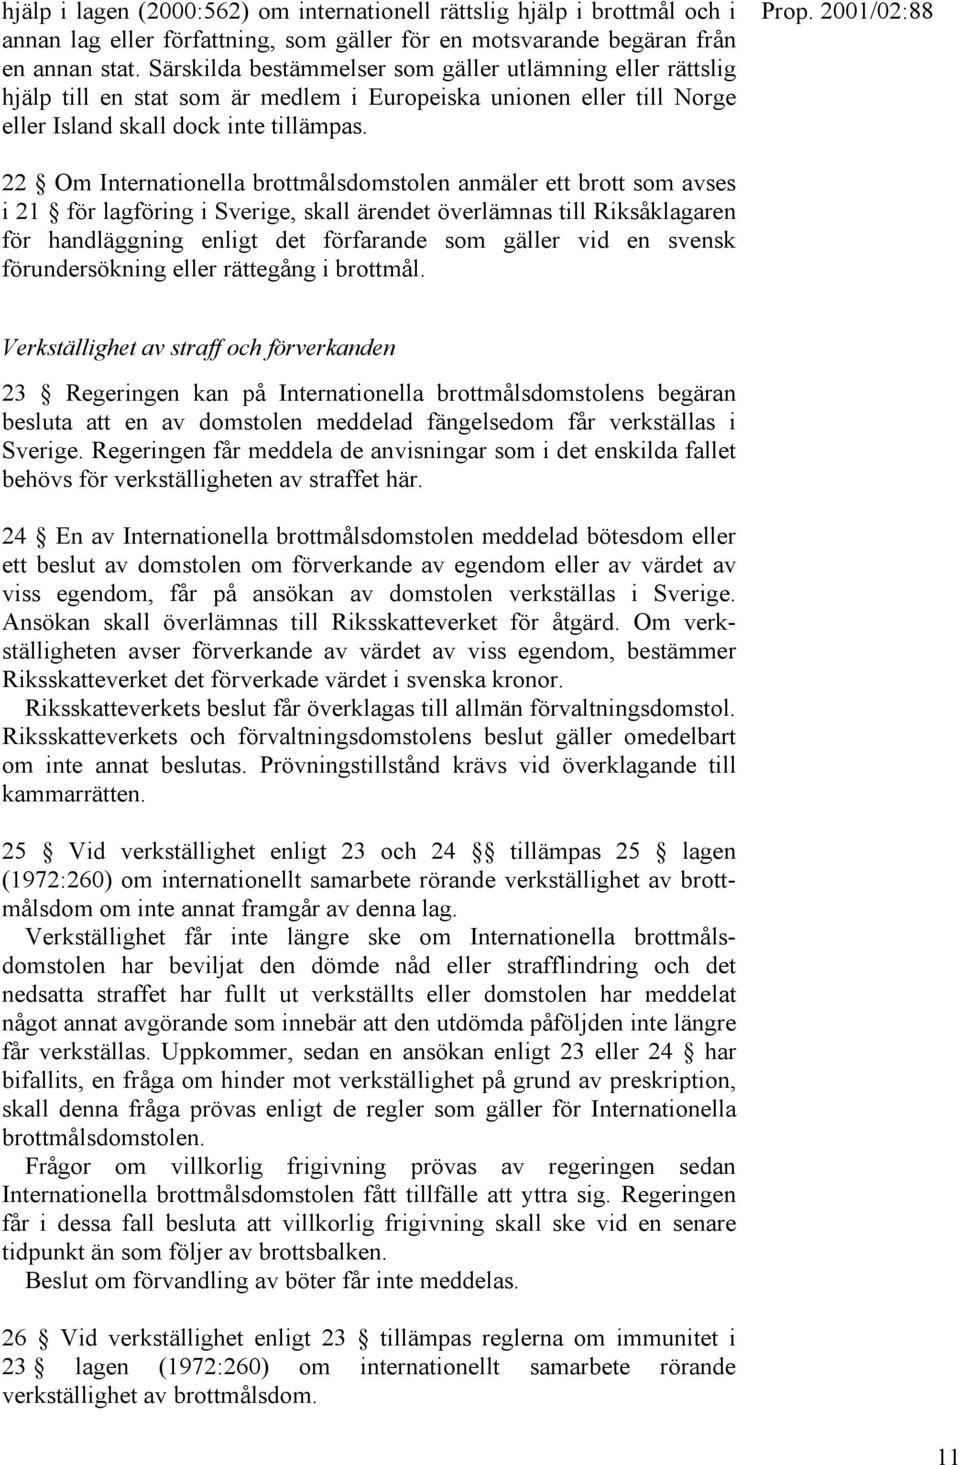 22 Om Internationella brottmålsdomstolen anmäler ett brott som avses i 21 för lagföring i Sverige, skall ärendet överlämnas till Riksåklagaren för handläggning enligt det förfarande som gäller vid en